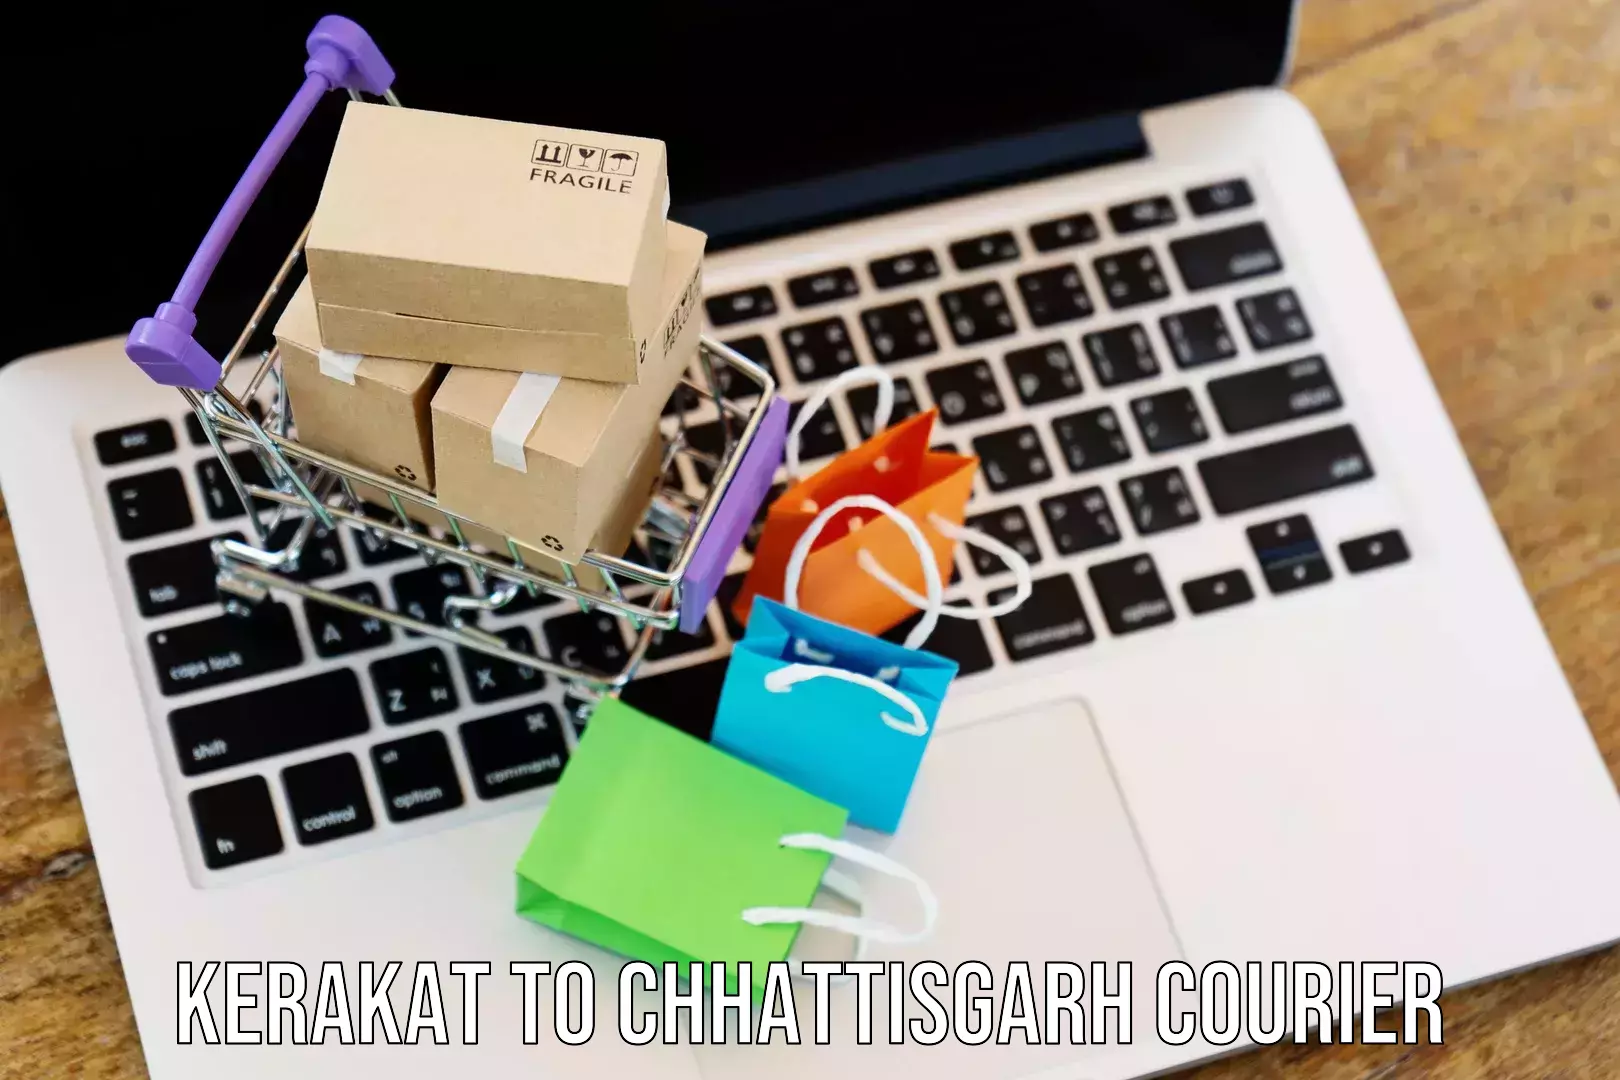 Local courier options Kerakat to Raigarh Chhattisgarh